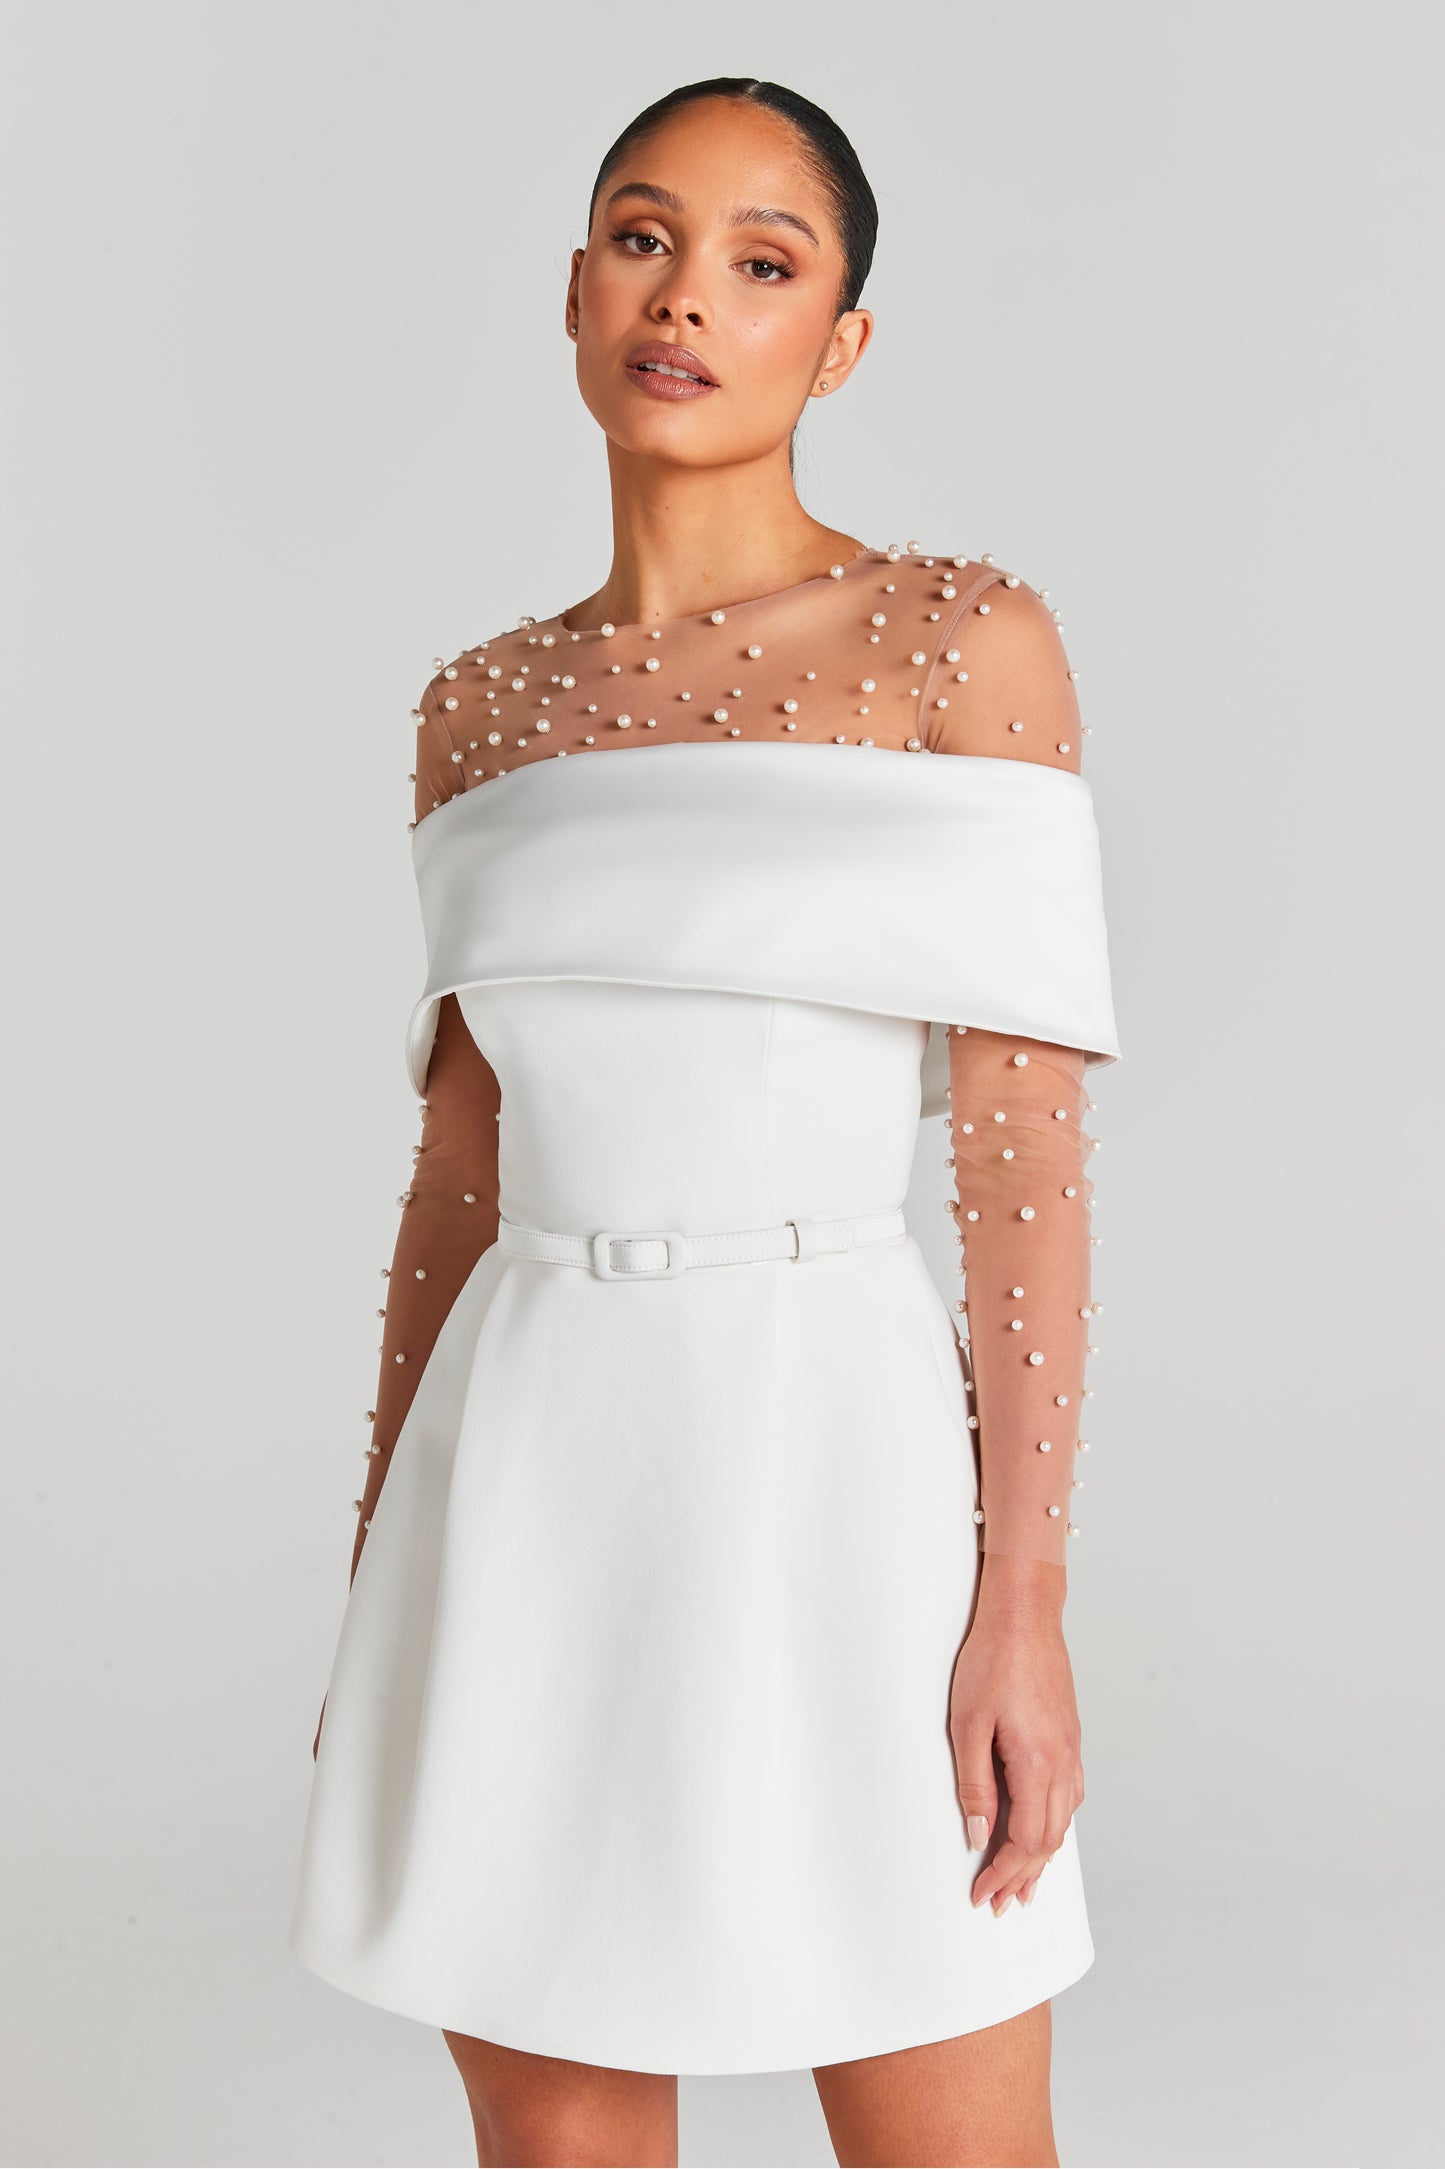 Harper White Dress